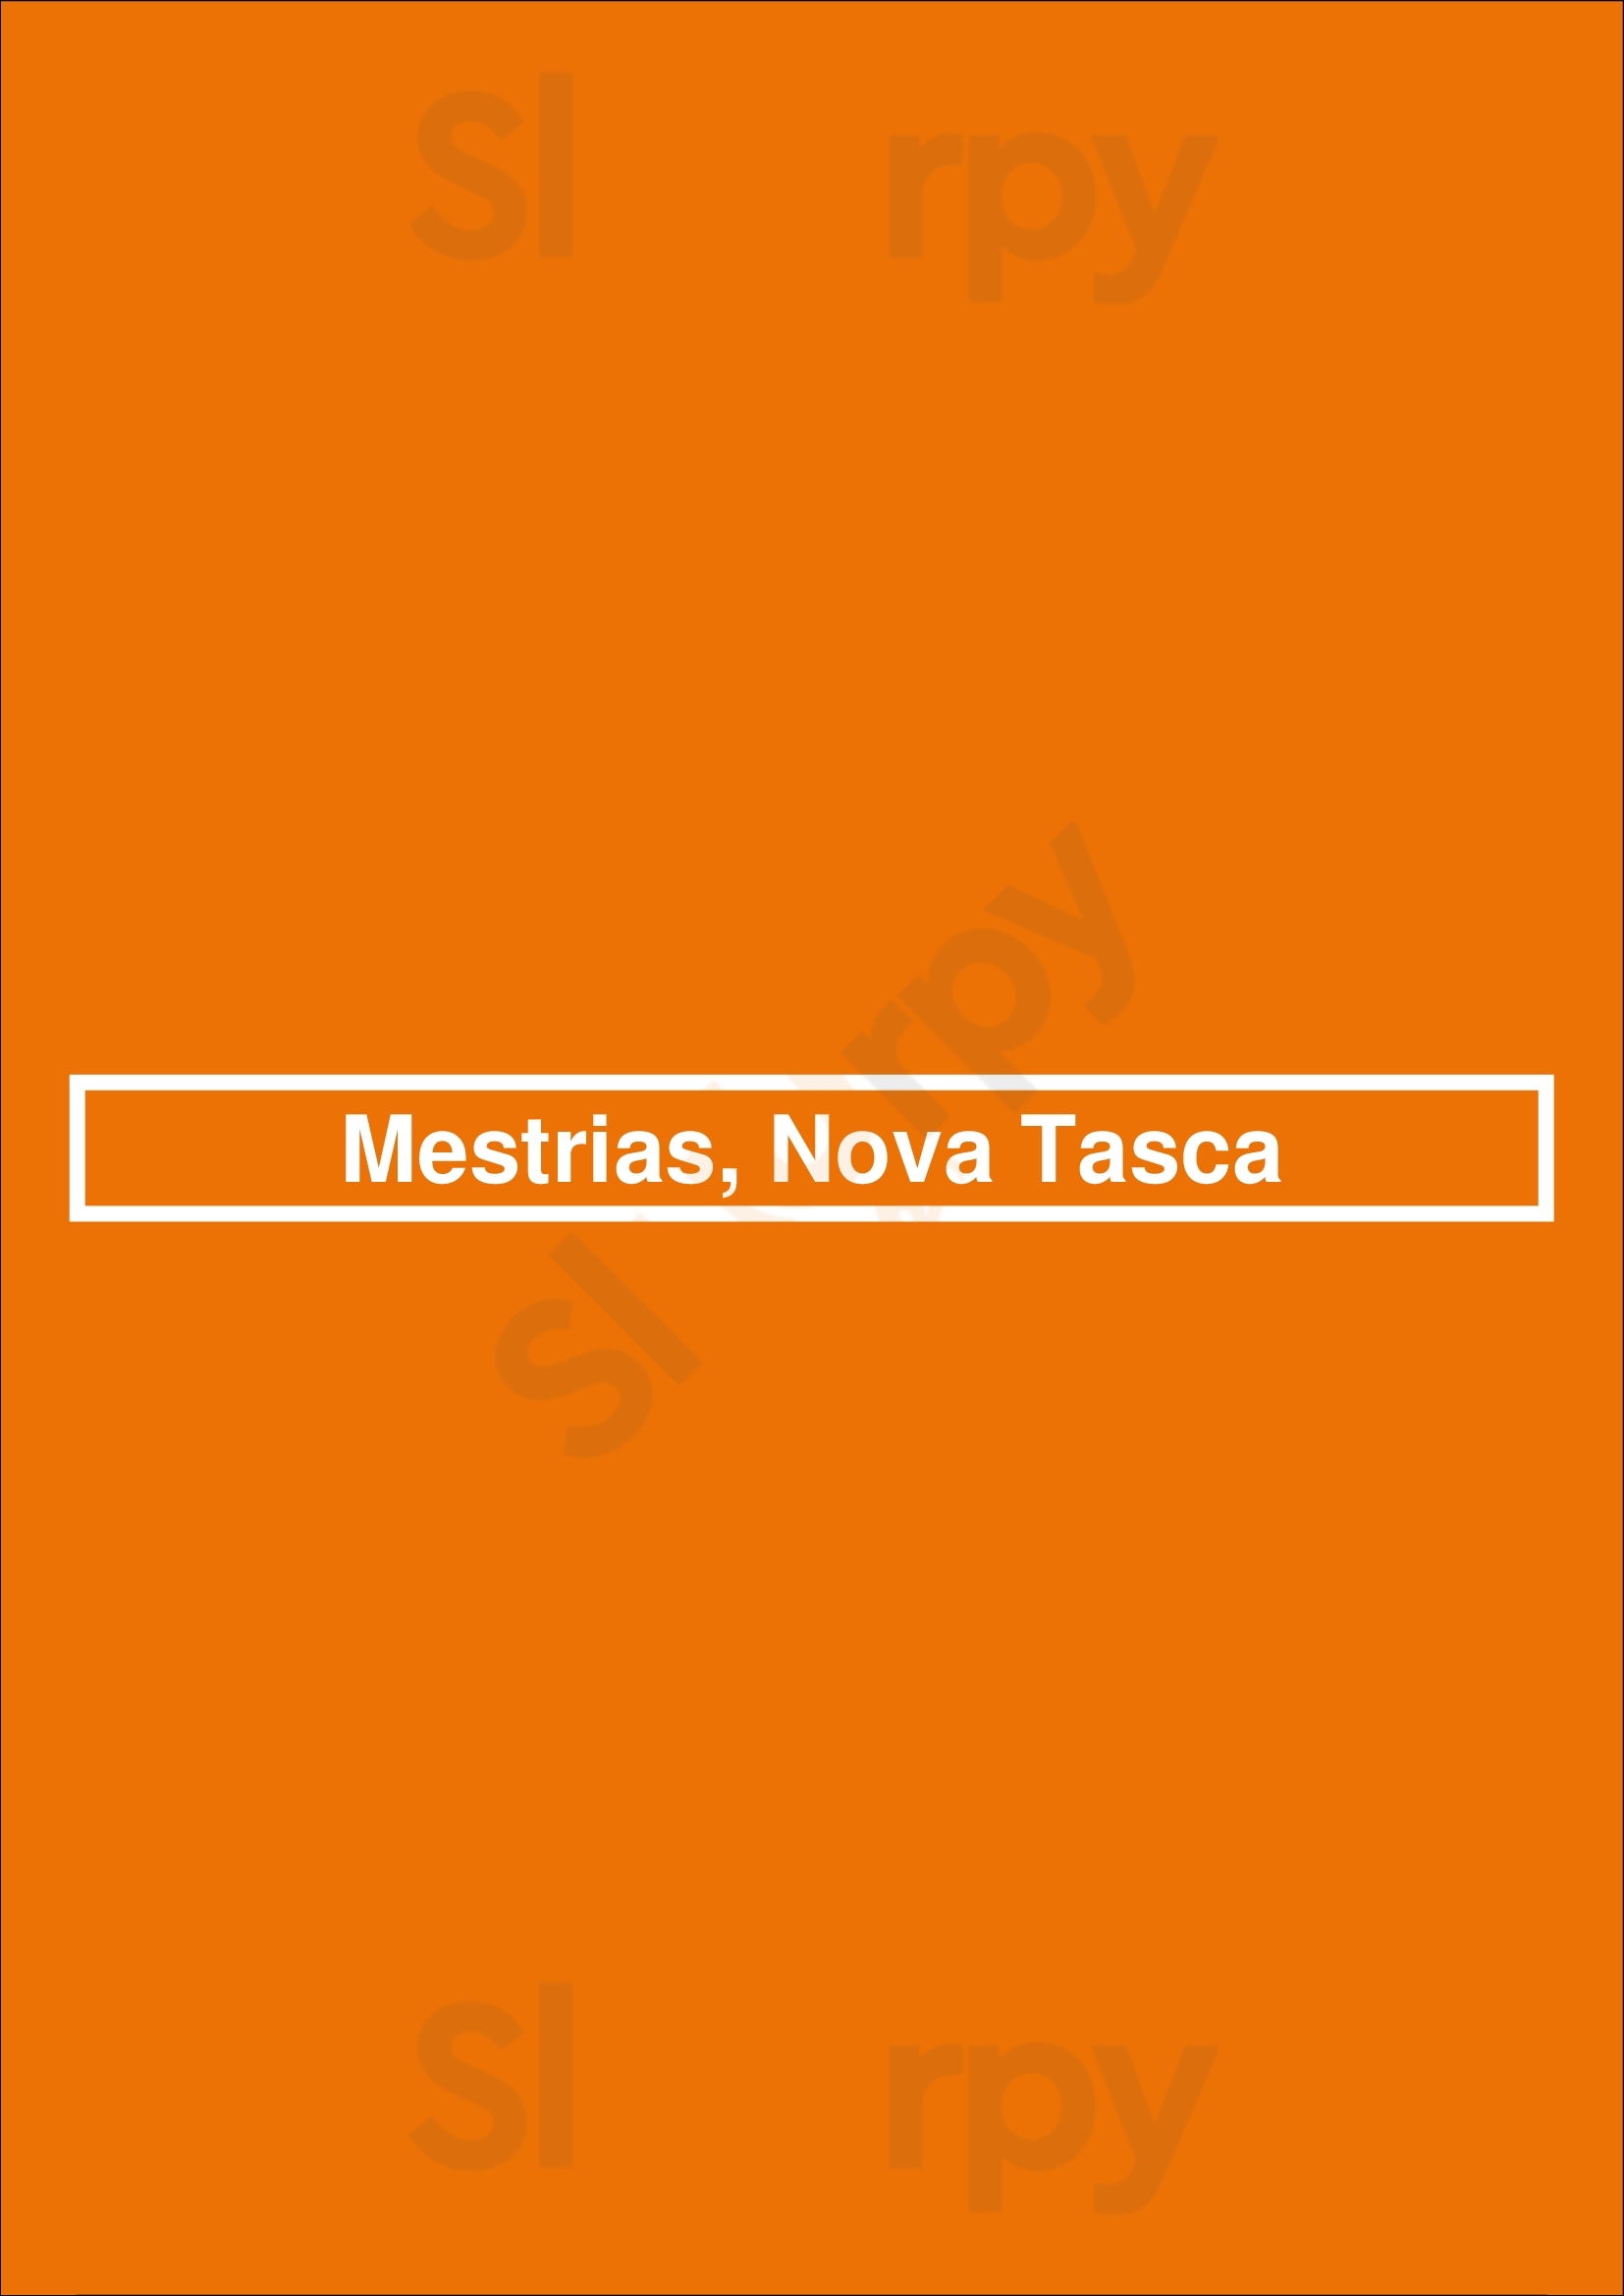 Mestrias, Nova Tasca Lisboa Menu - 1